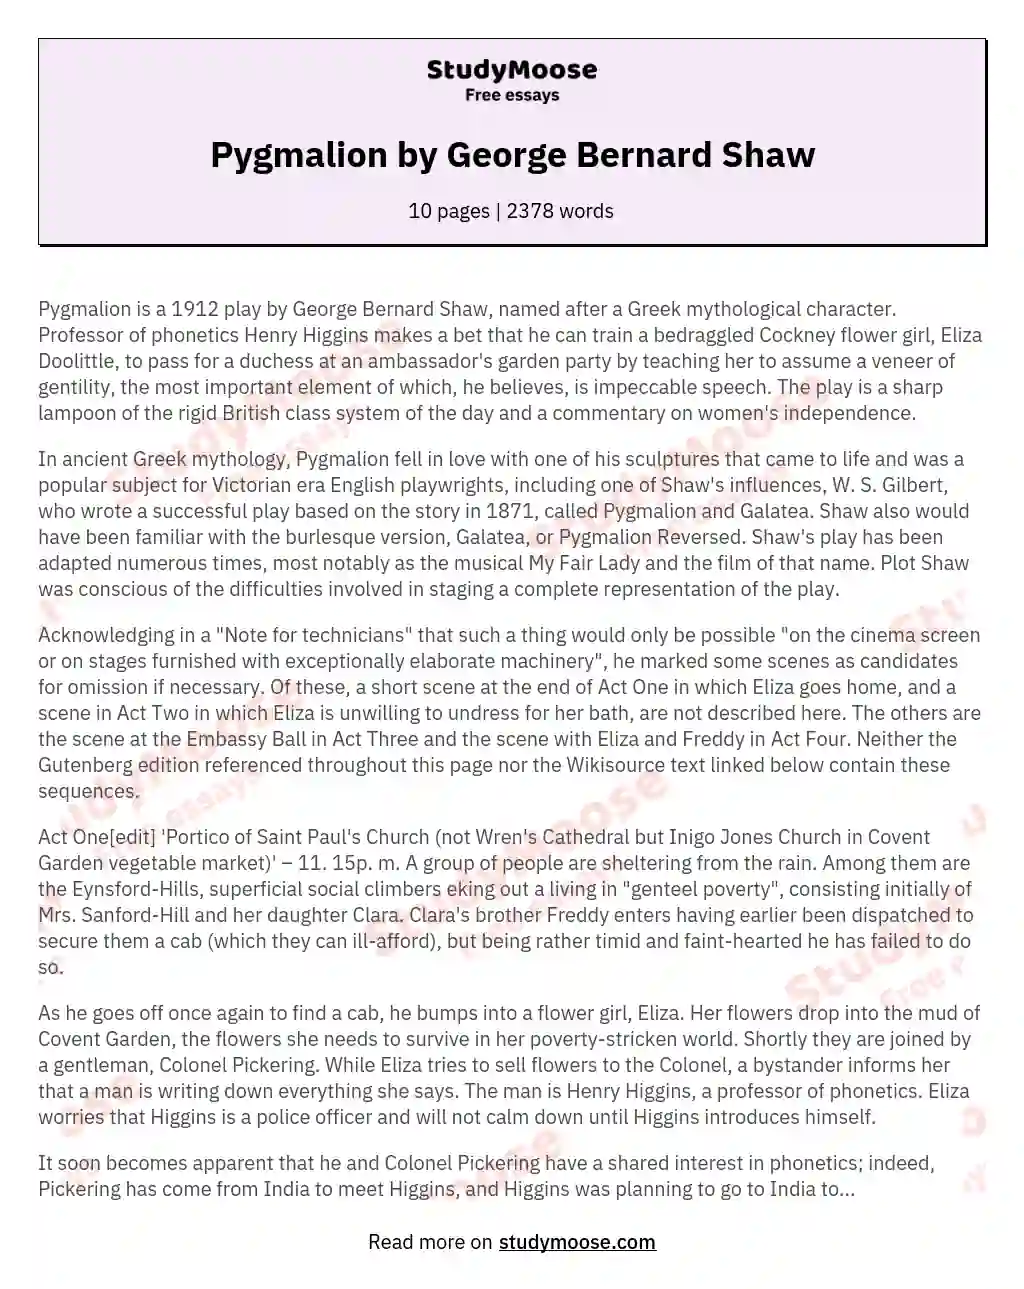 Pygmalion by George Bernard Shaw essay